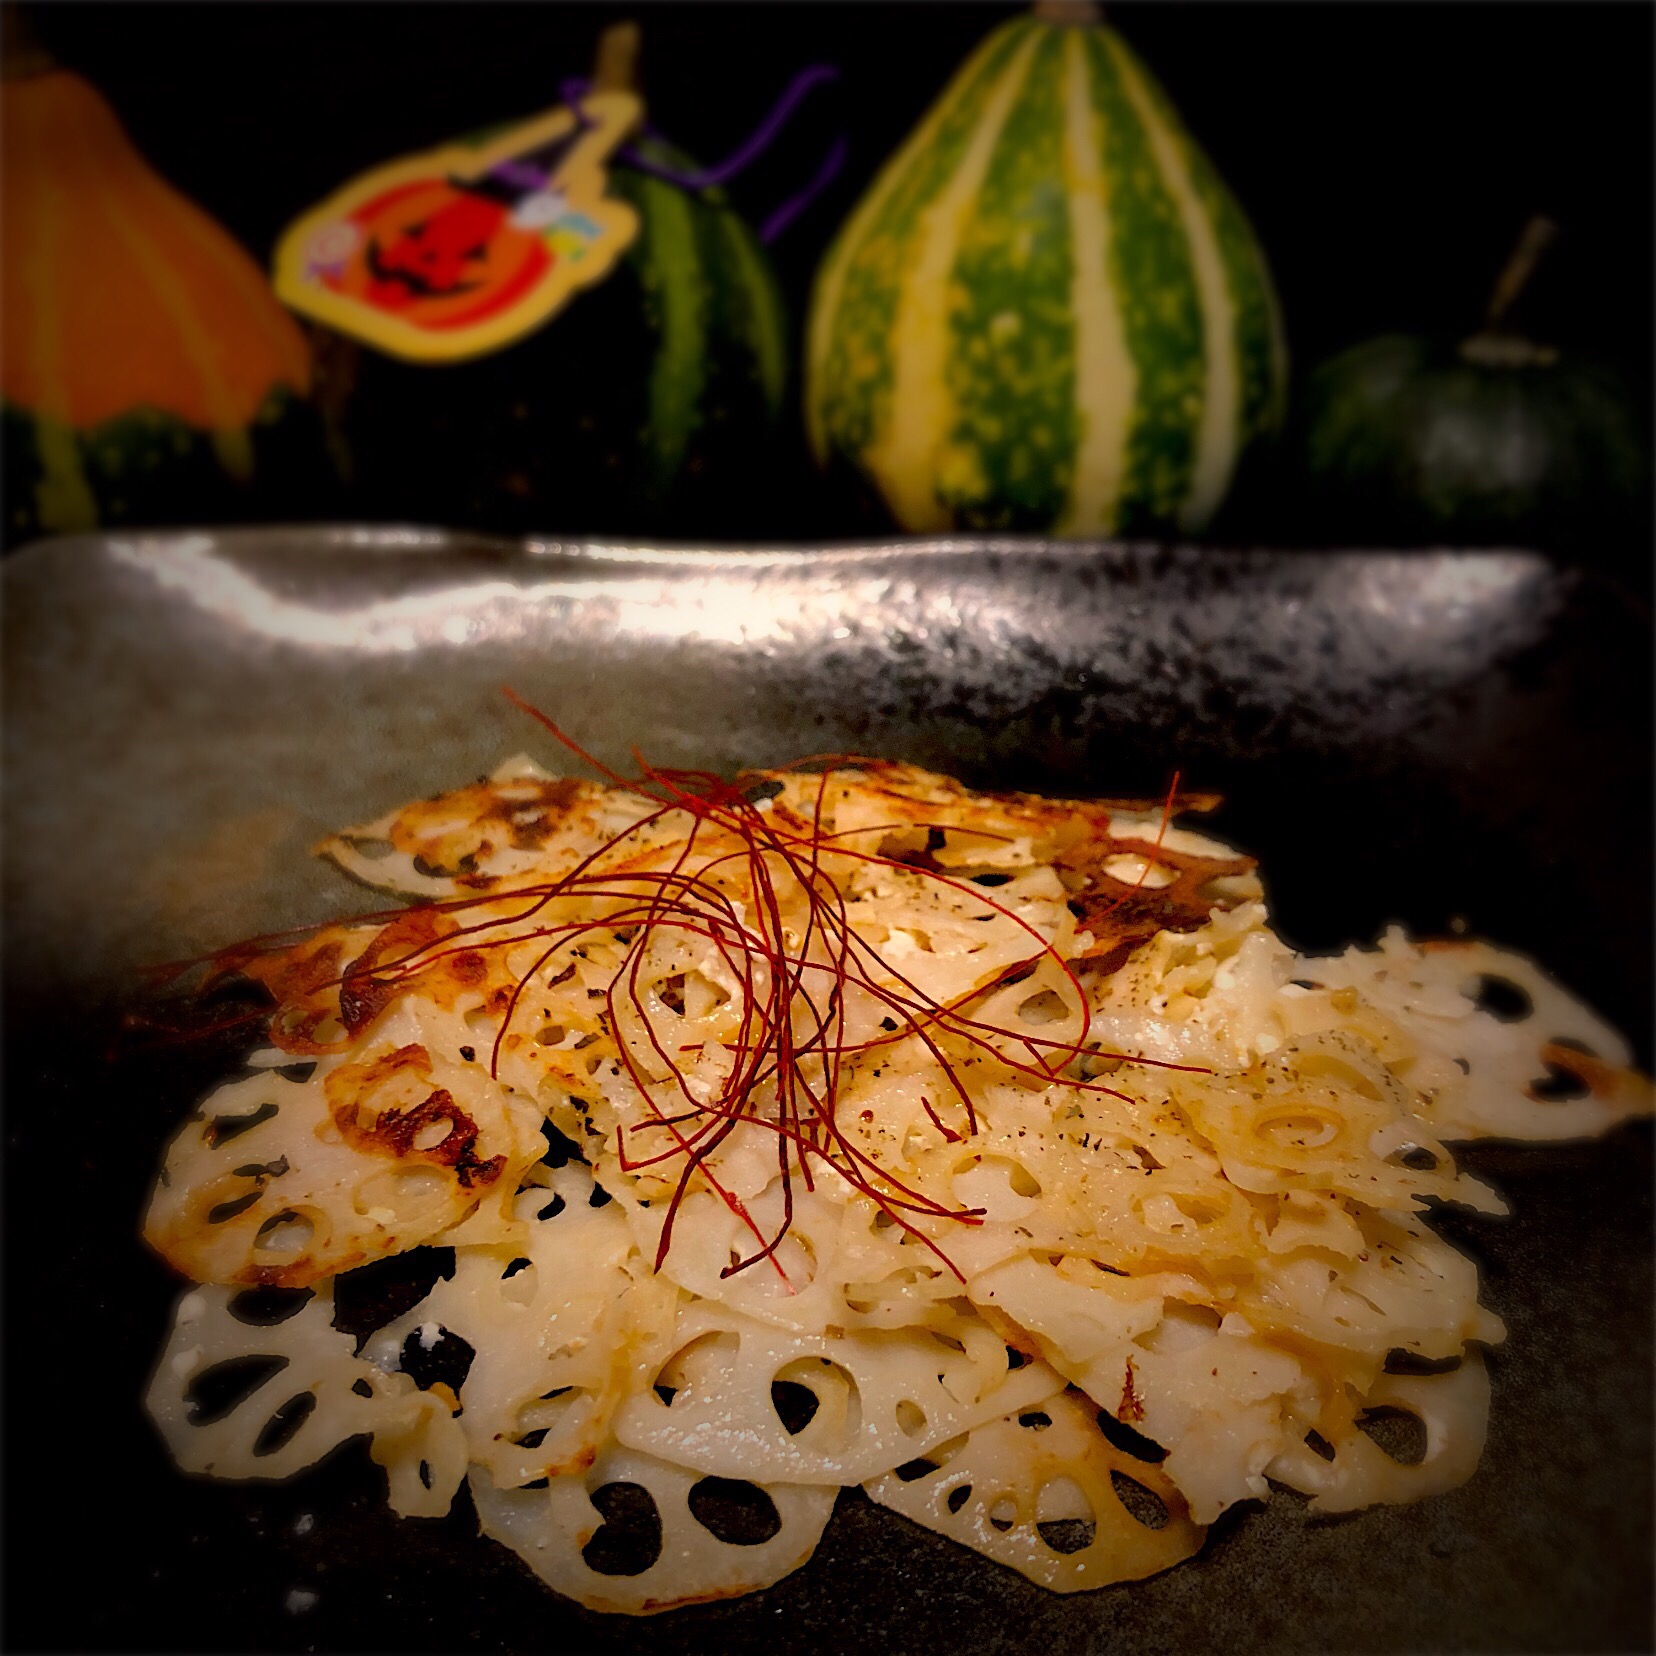 Tomoko Itoさんの料理 レンコンキンピラ風味のカリカリチーズ❤️ #カリカリ #れんこん #チーズ #キンピラ のチーズをお醤油水切りヨーグルトに置き換えて